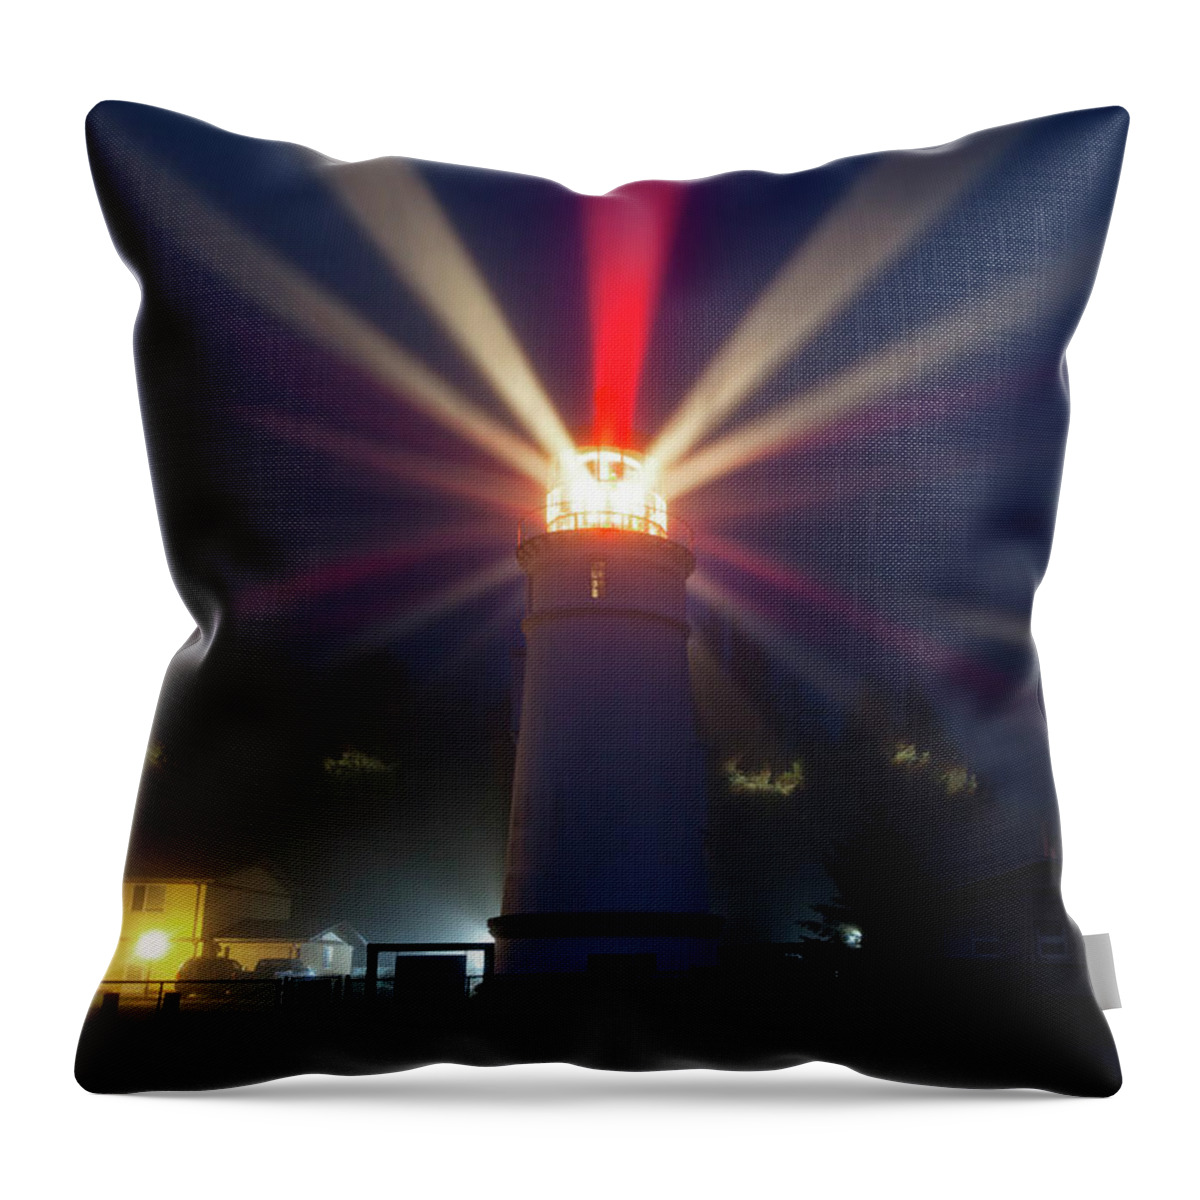 Umpqua Throw Pillow featuring the photograph Umpqua River Lighthouse #2 by Rick Pisio